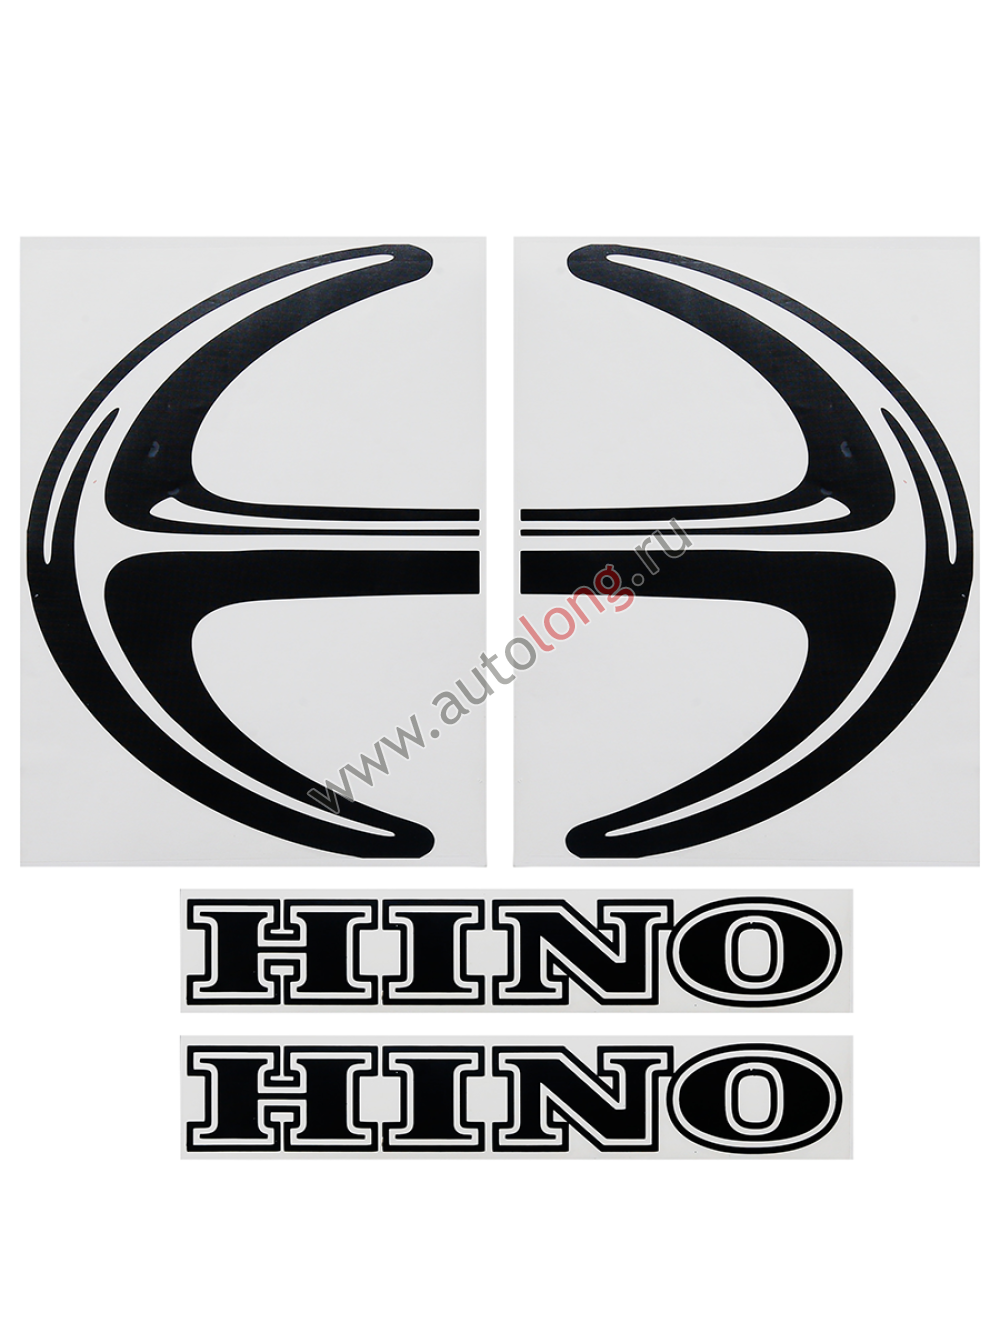 Наклейки на автомобиль HINO (вырезанные) Черные (45х34 см), комплект на две стороны